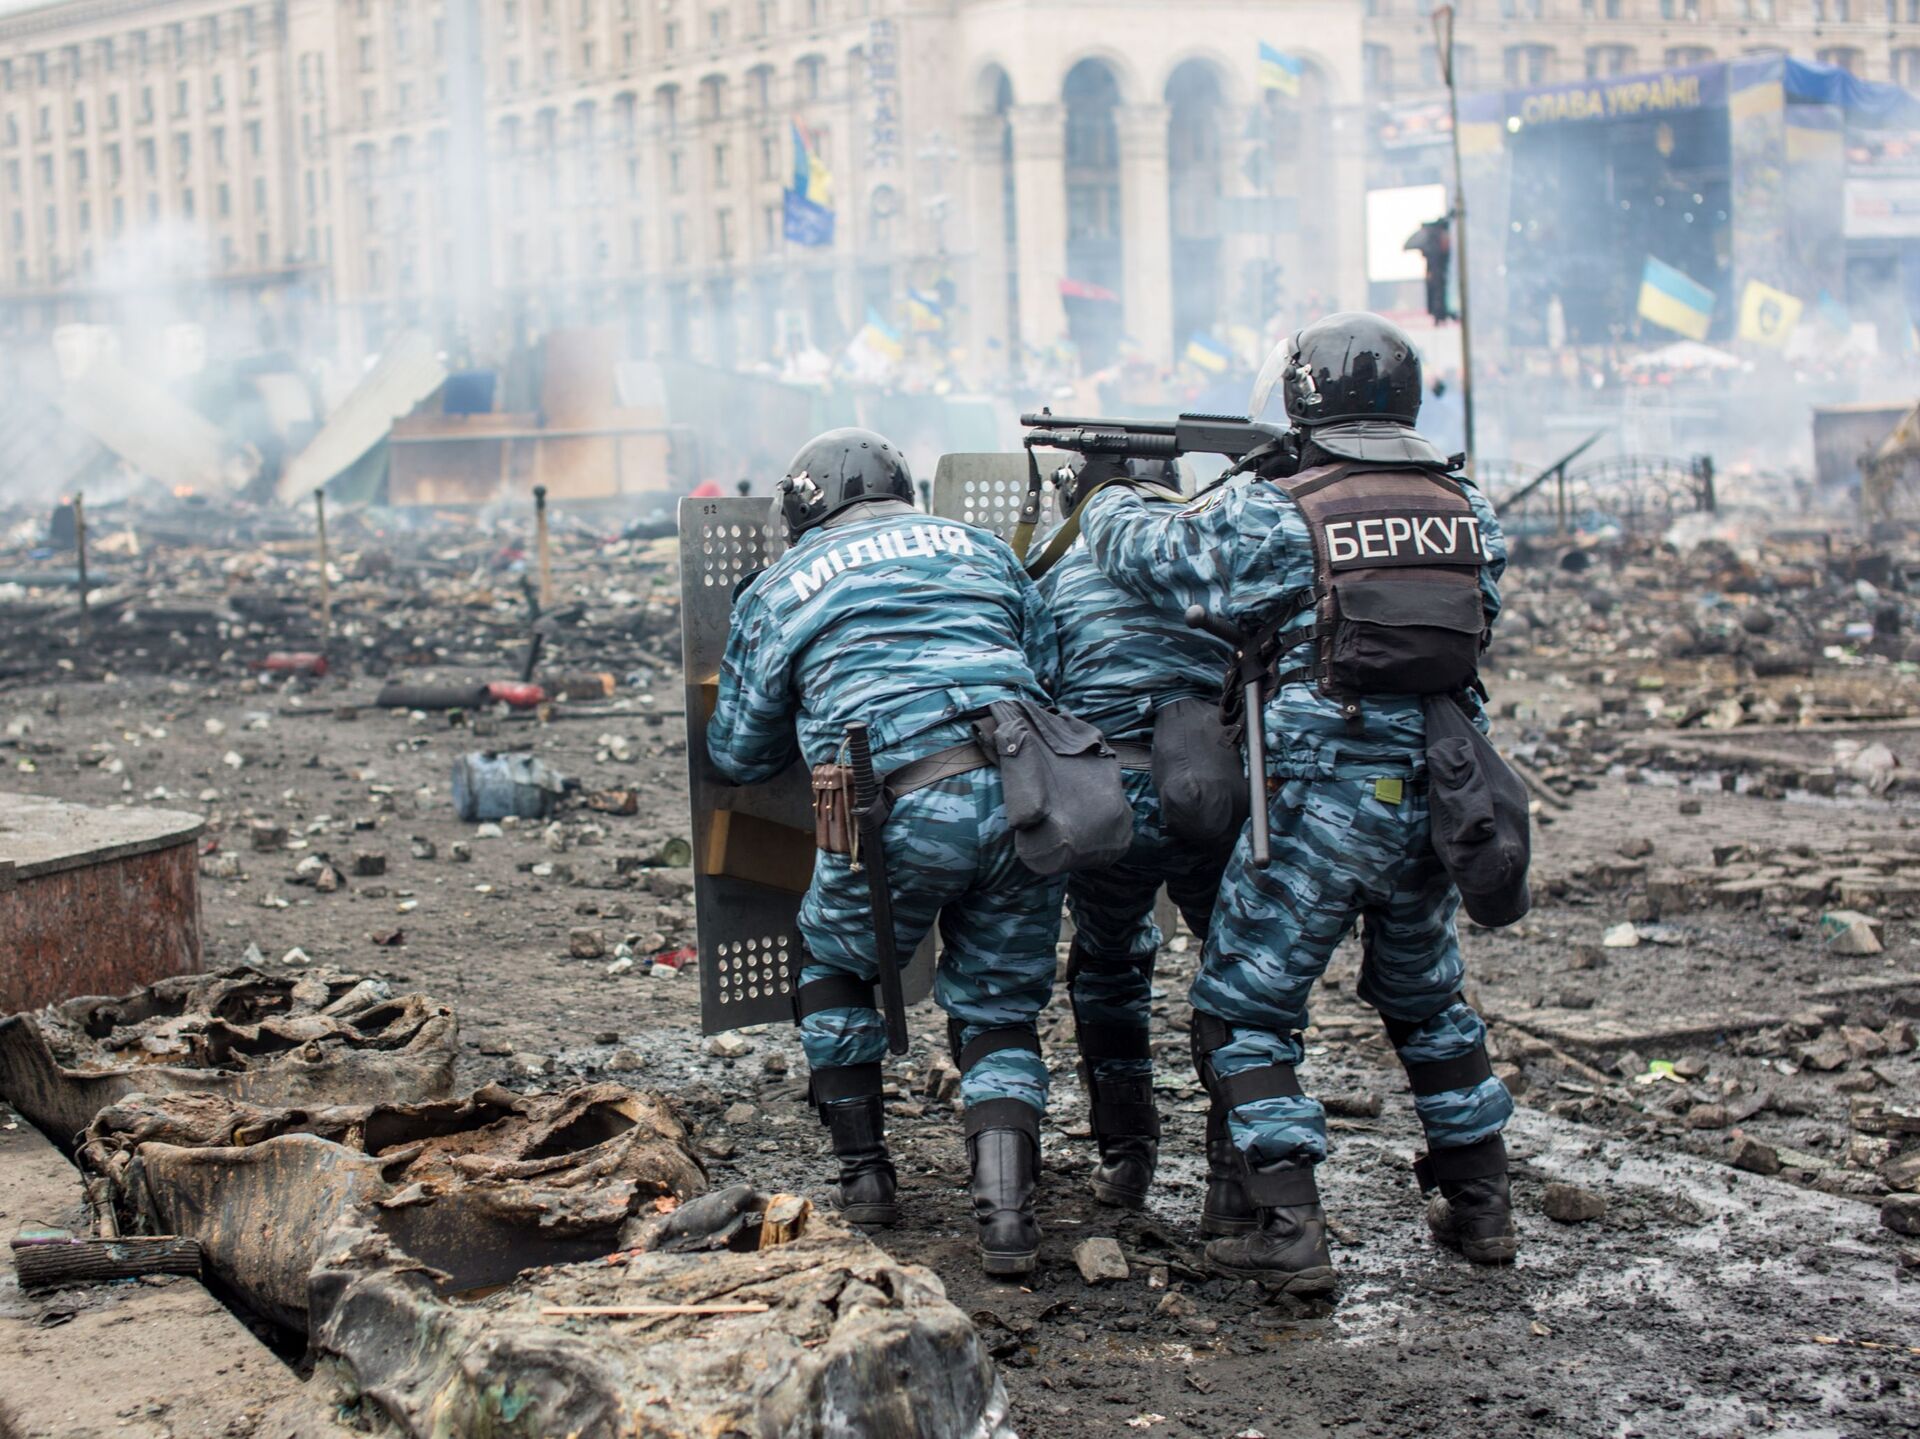 Что произошло на майдане в 2014. Беркут Украина Майдан на Украине в 2014. Евромайдан на Украине в 2014 Беркут.